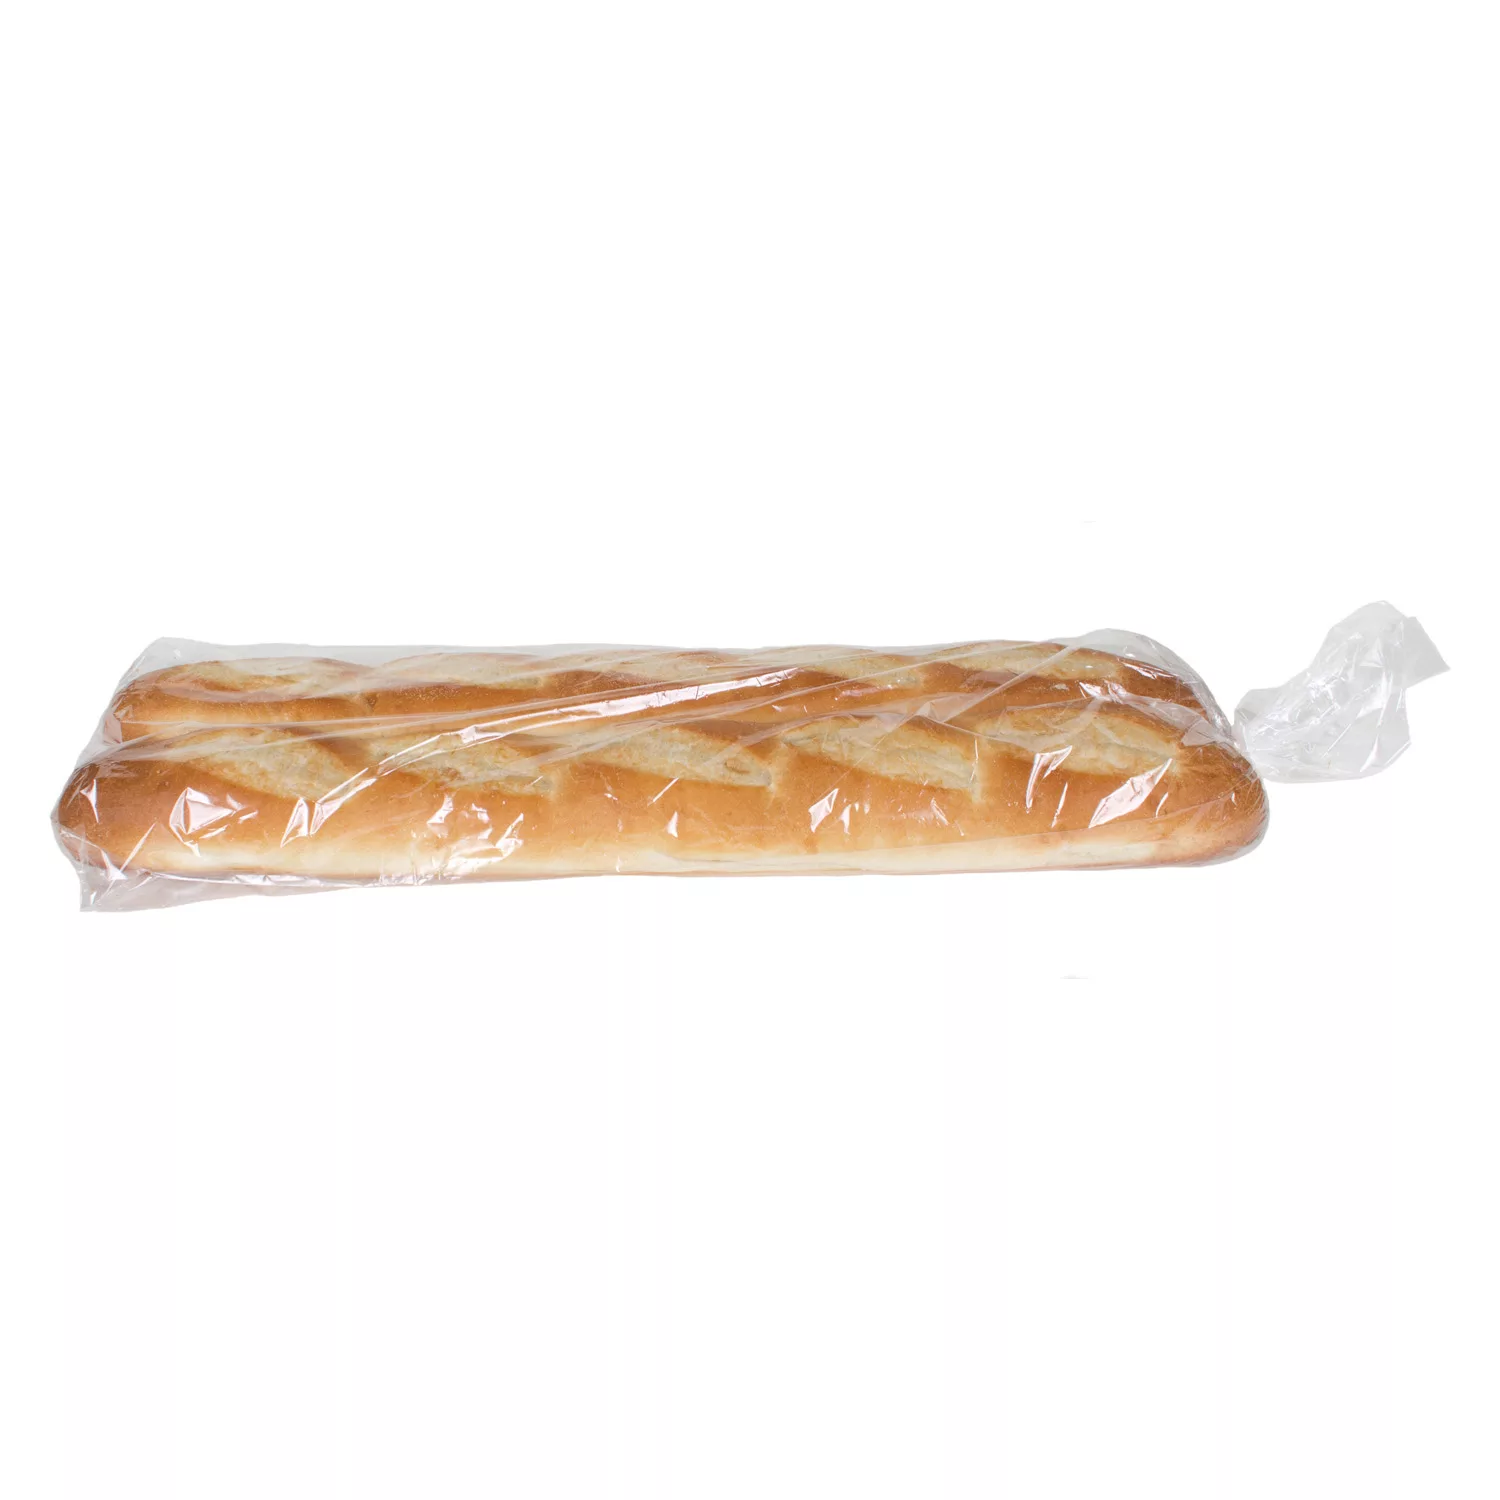 Member's Mark French Bread